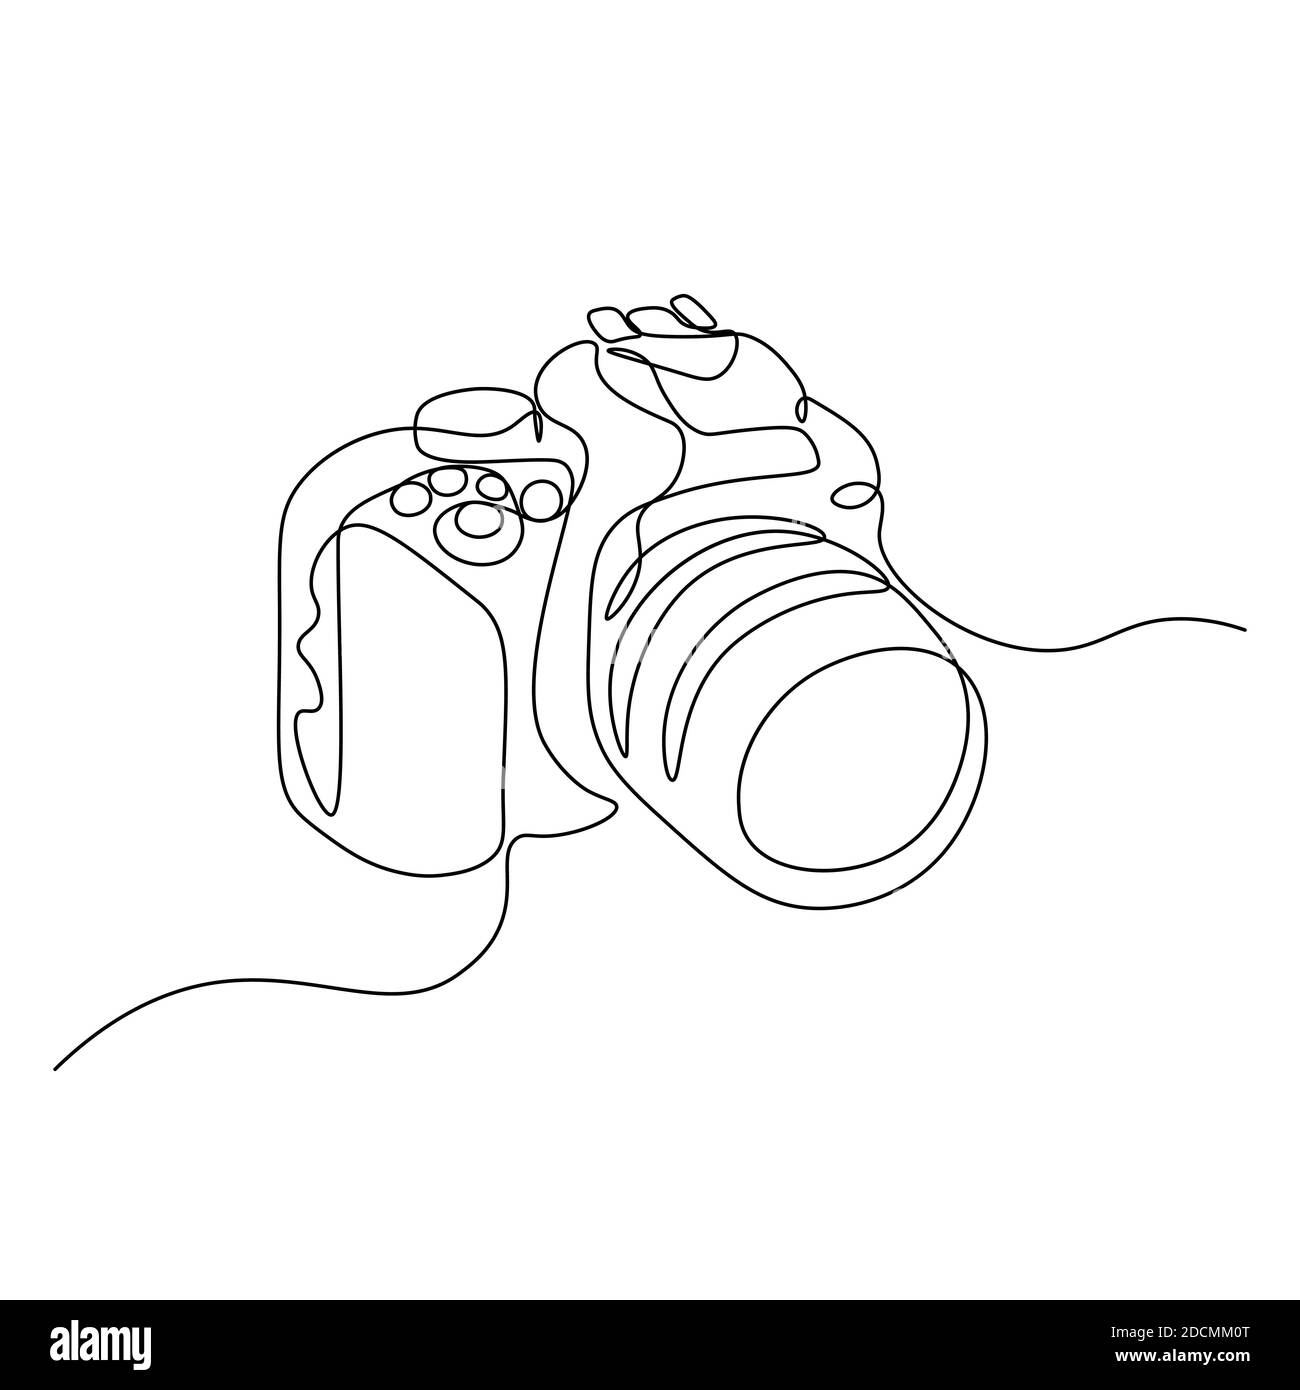 Camera line drawing Banque d'images noir et blanc - Alamy